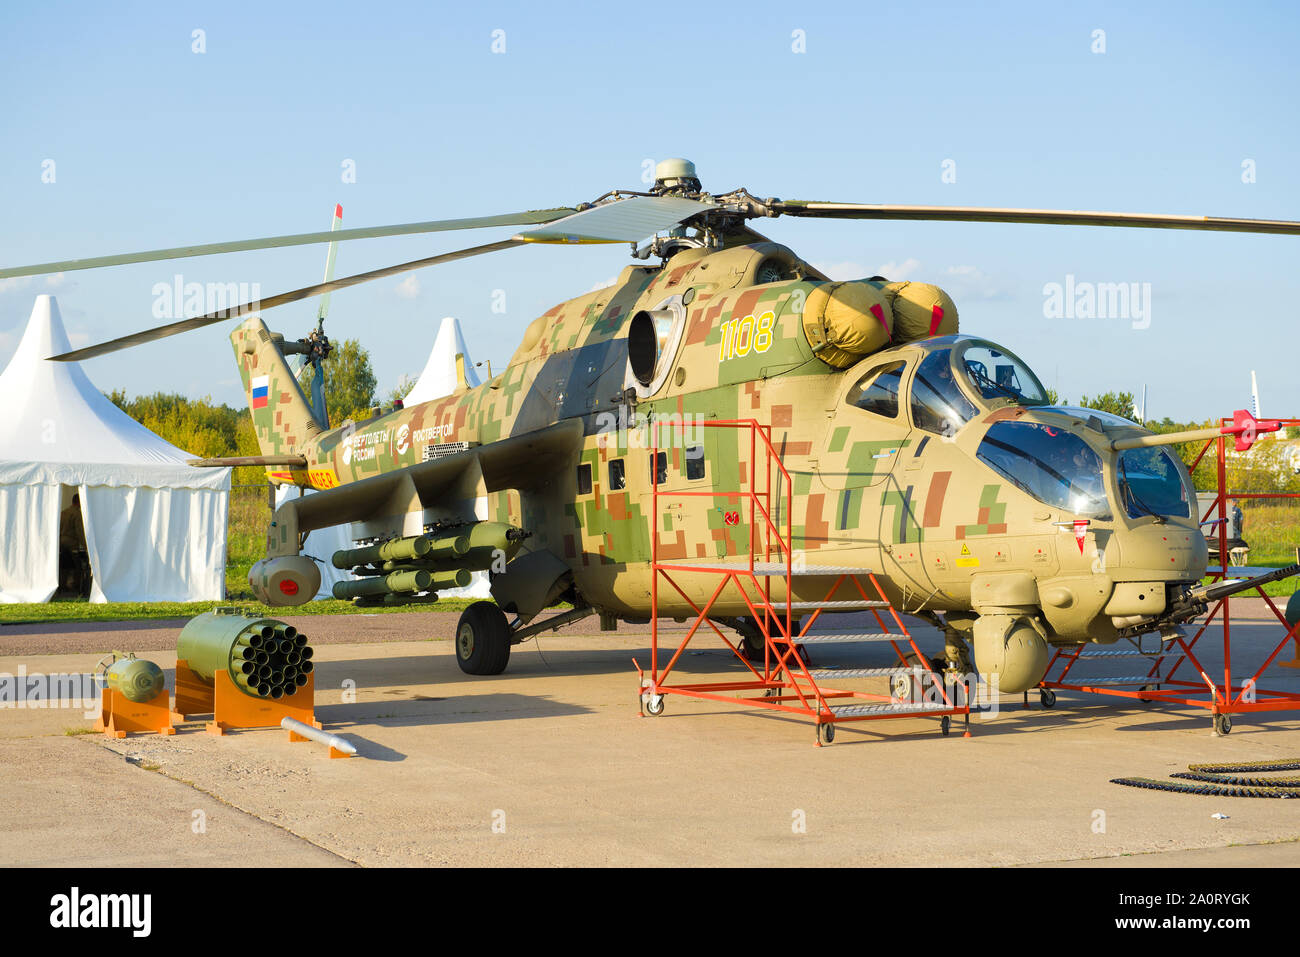 Joukovski, Russie - le 30 août 2019 : Mi-24P - Fédération de transports et de l'hélicoptère de combat de près. Air show MAKS-2019 Banque D'Images